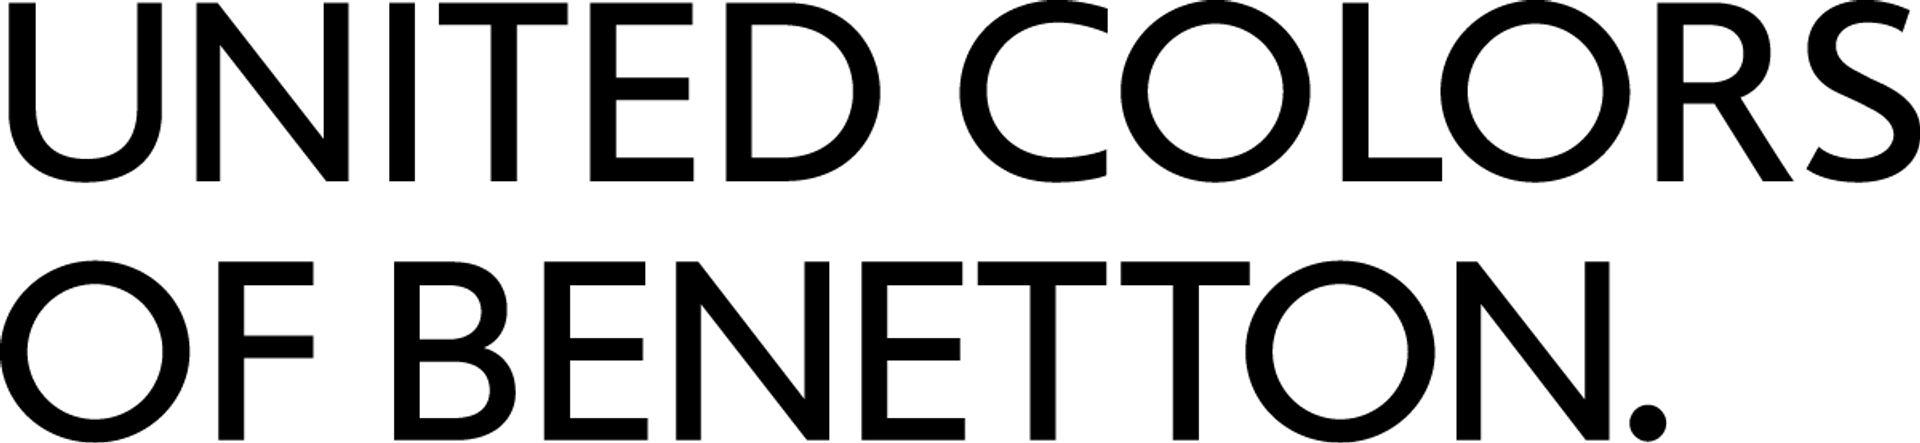 UNITED COLORS OF BENETTON logo del volantino attuale